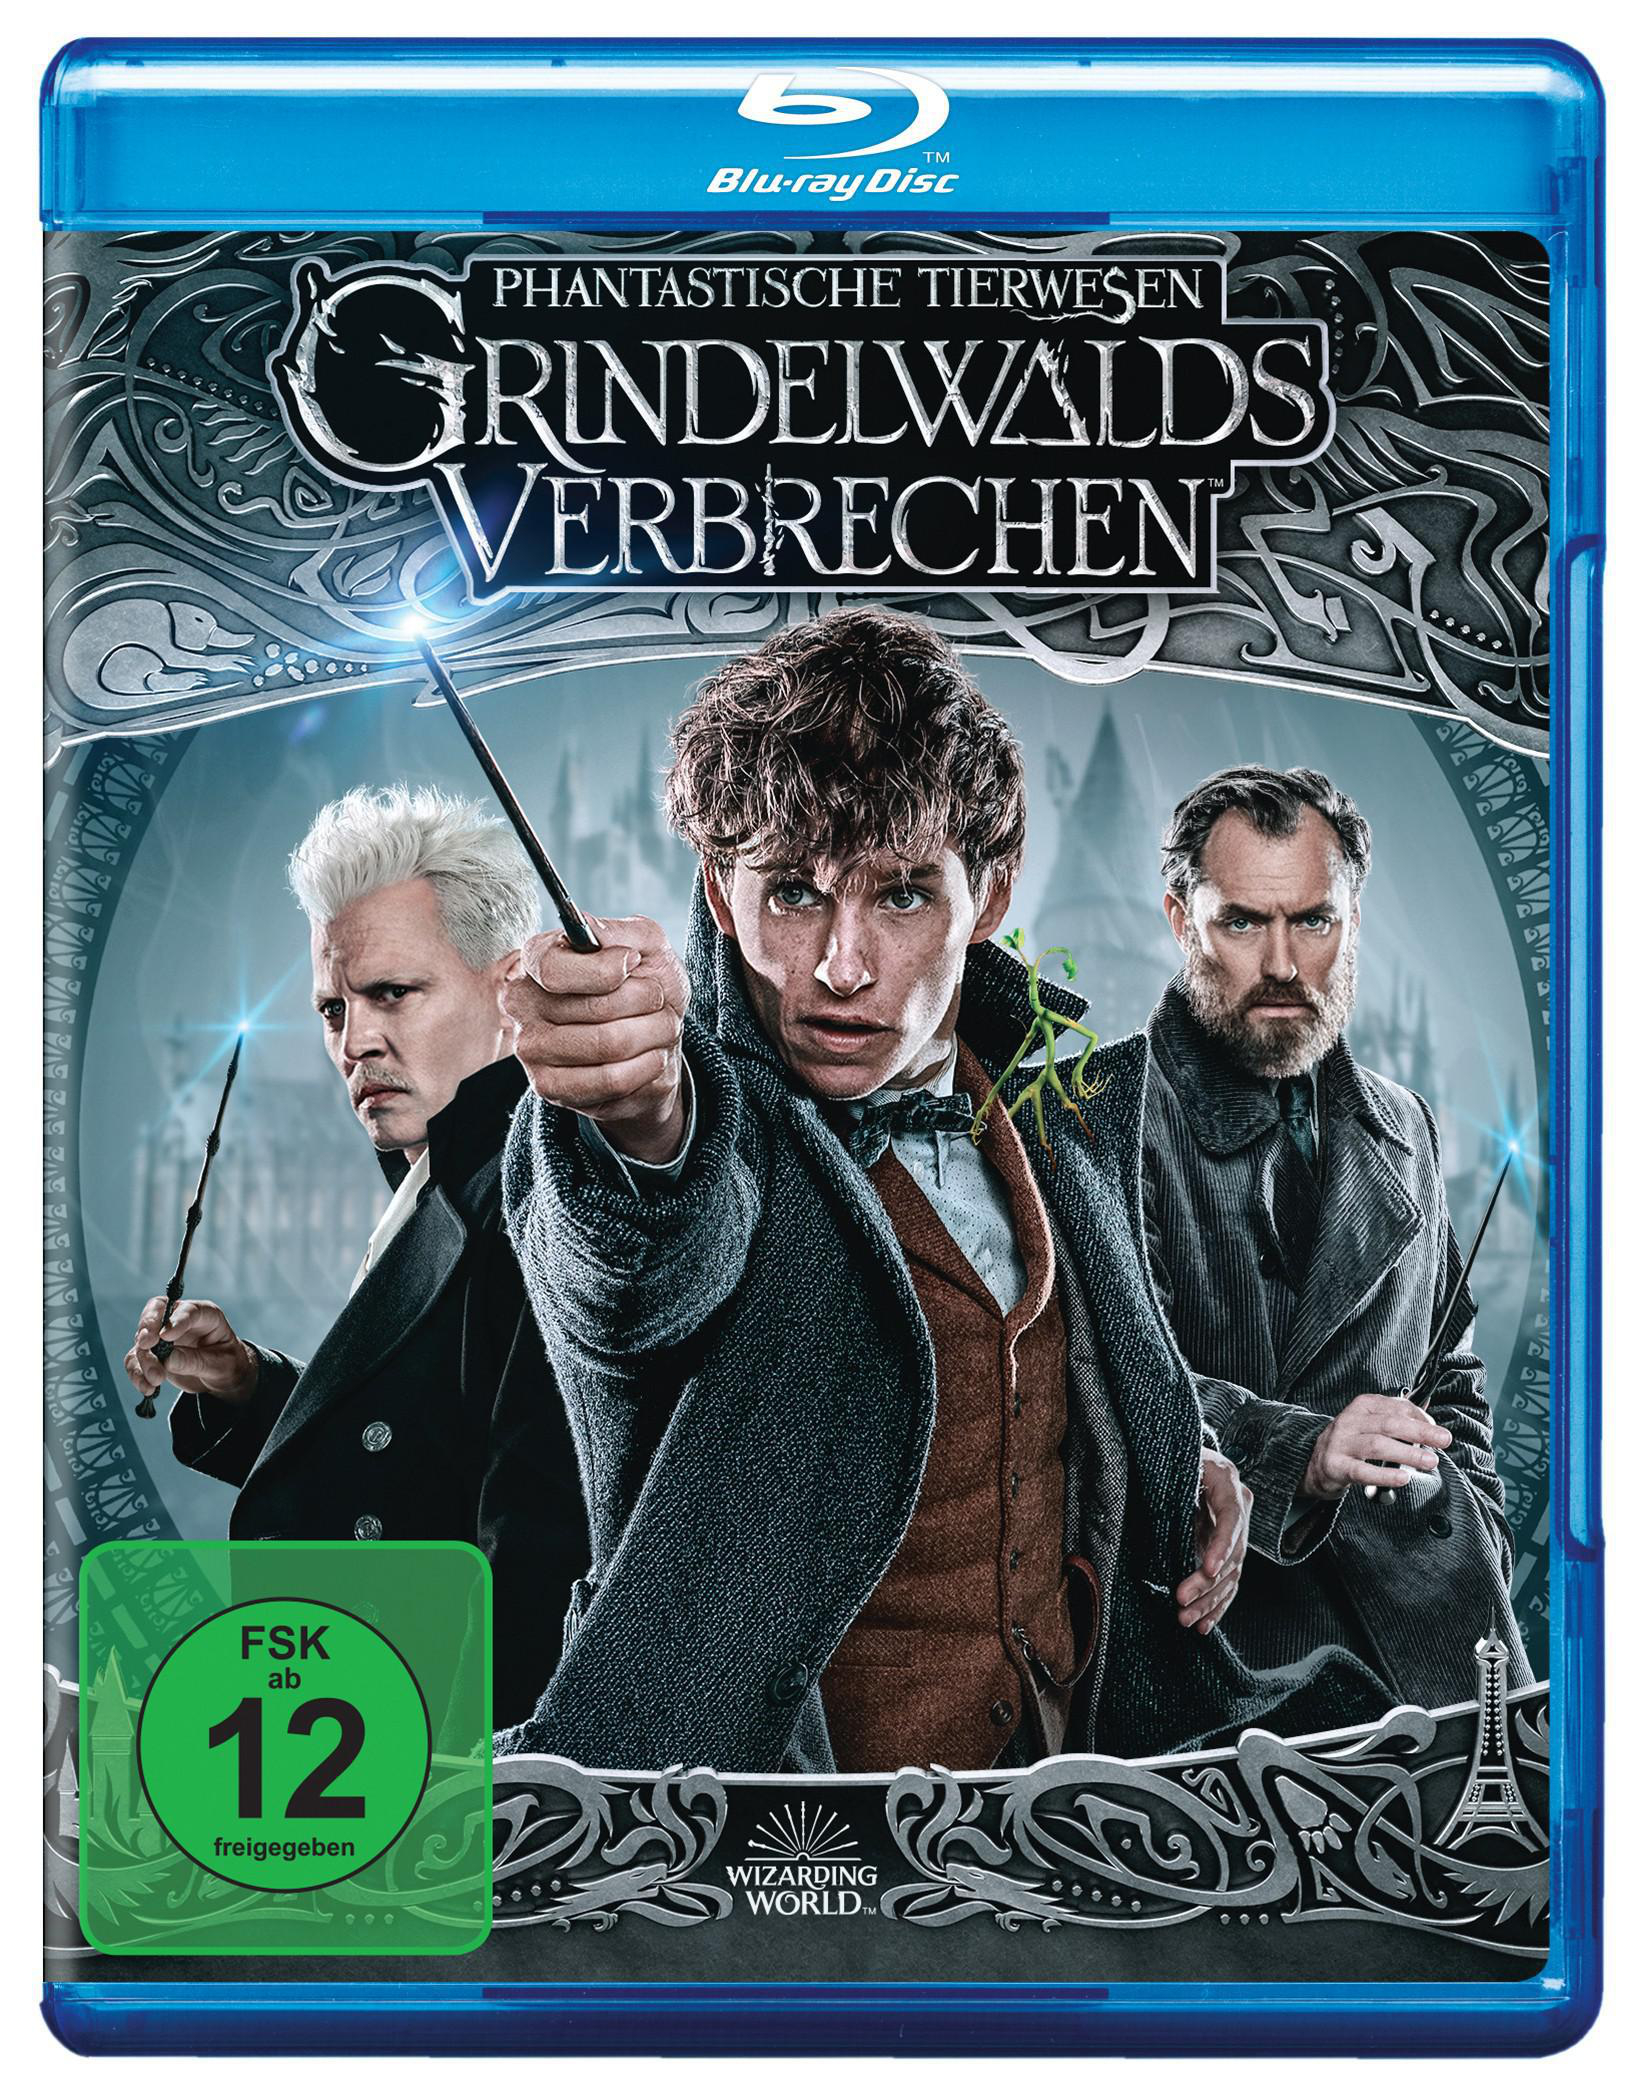 Grindelwalds Extended Phantastische Kinofassung Verbrechen Tierwesen + Cut Blu-ray